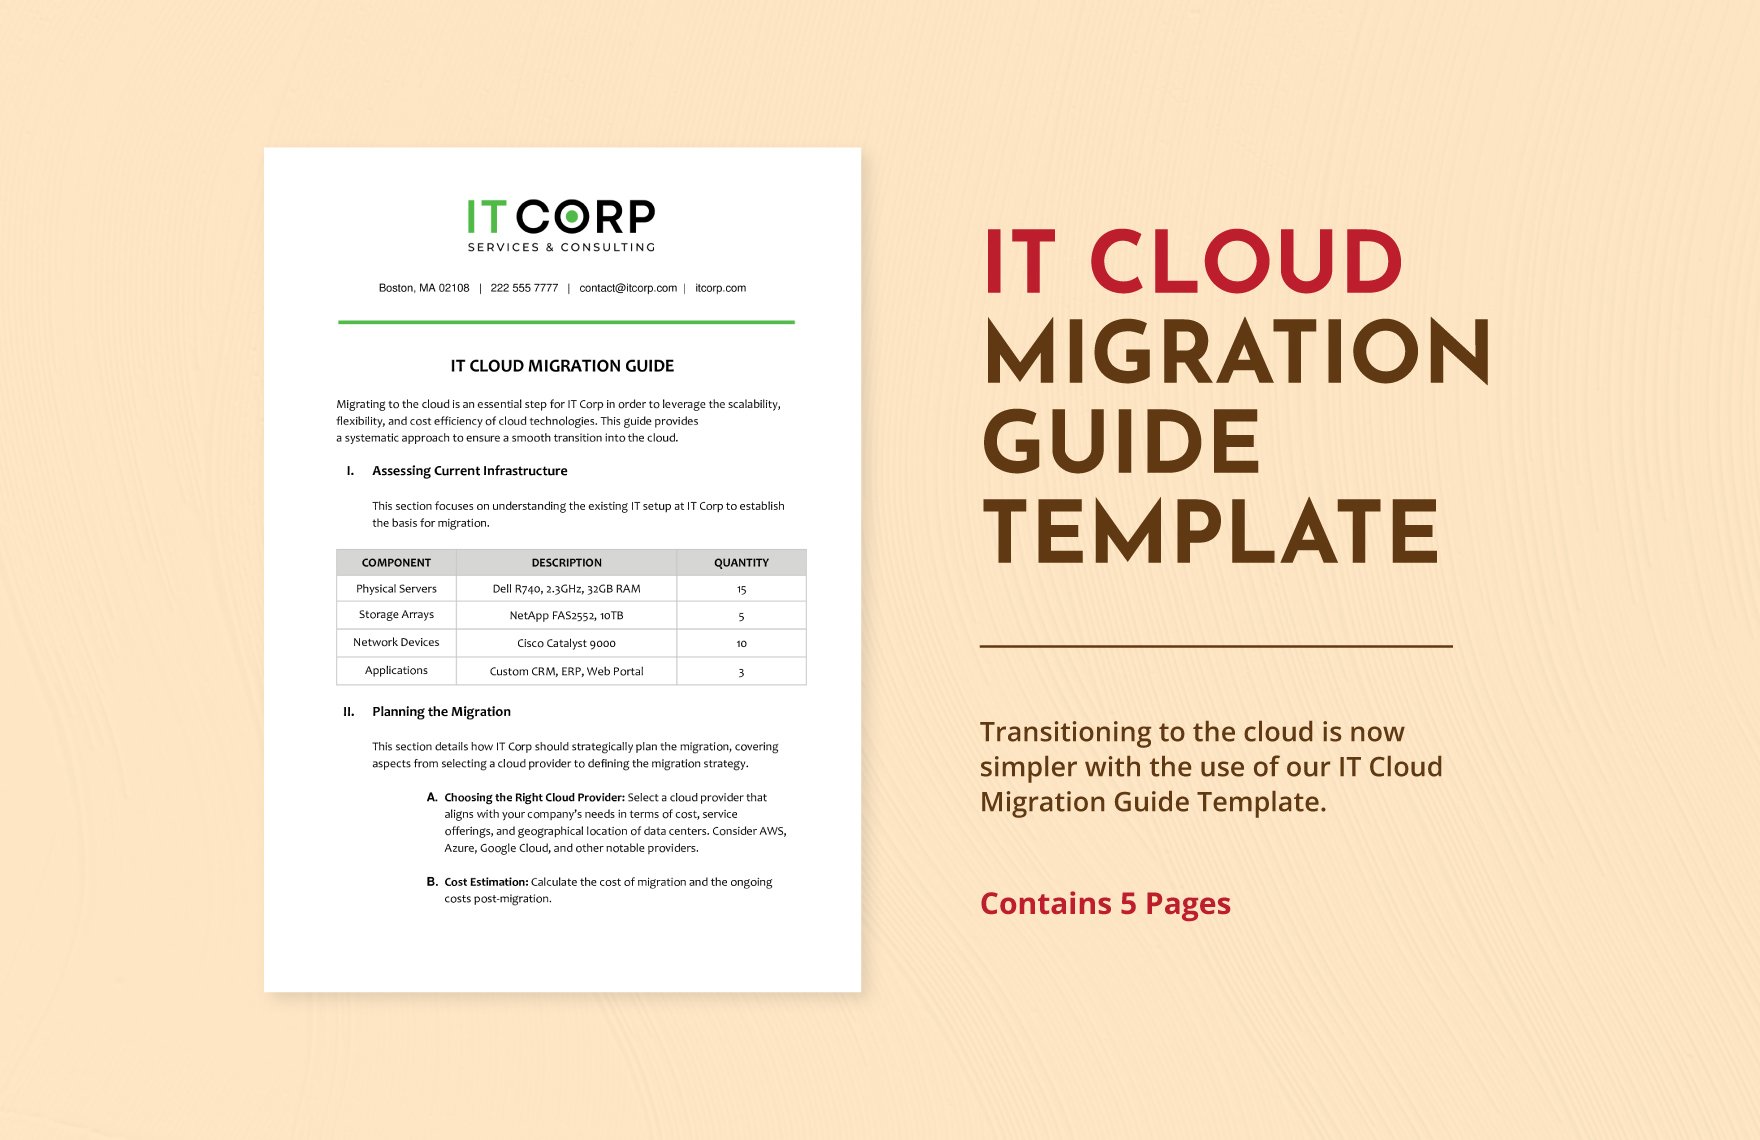 IT Cloud Migration Guide Template